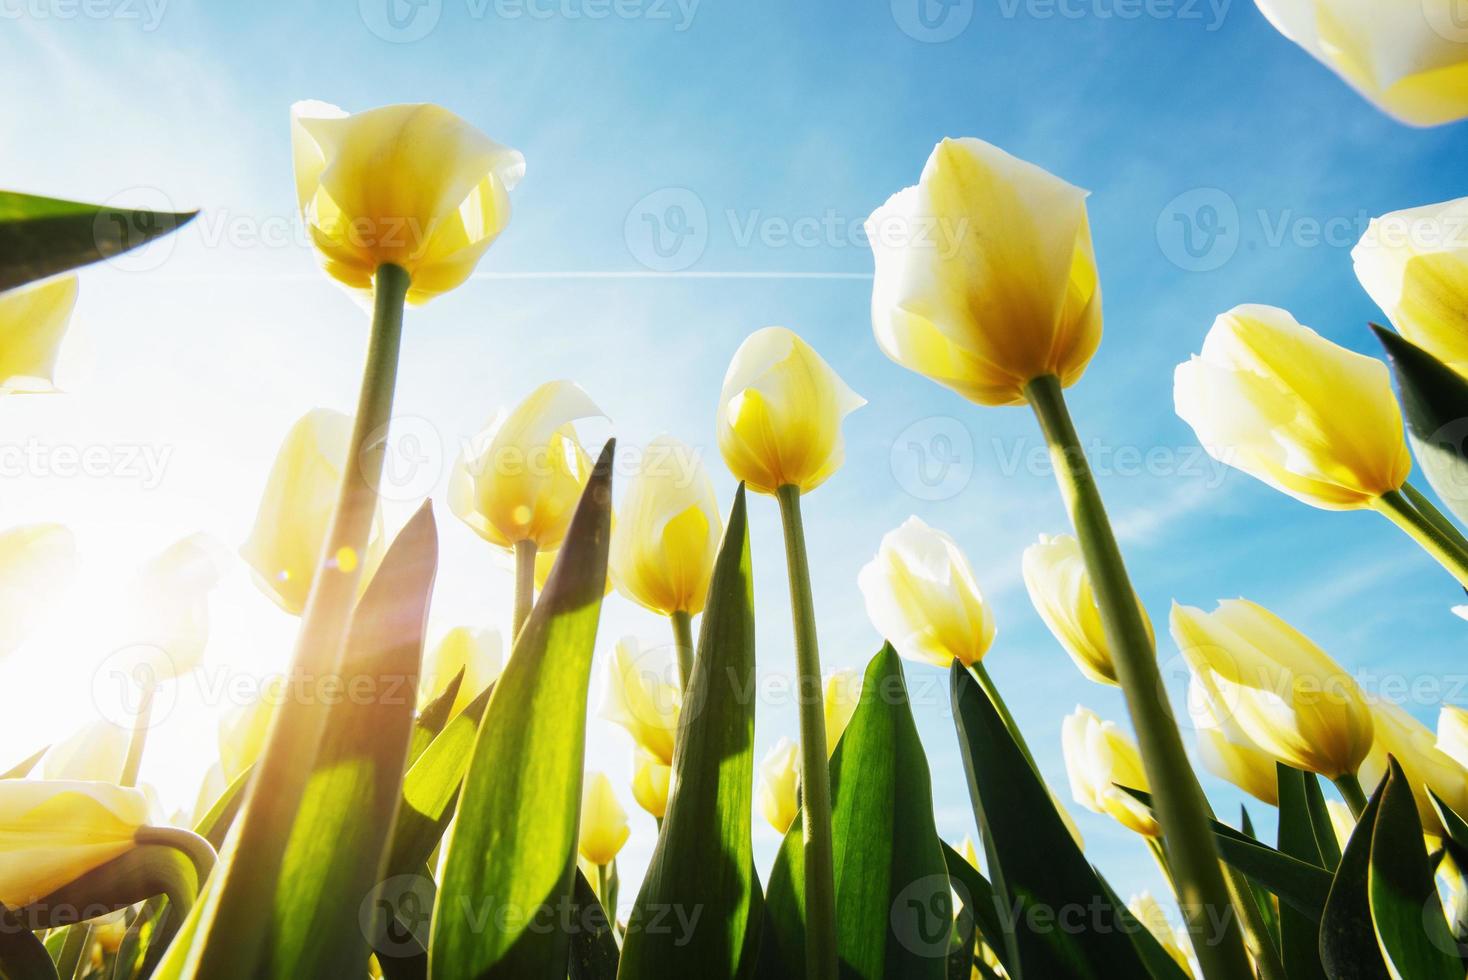 gelbe tulpen im sonnenlicht dagegen foto